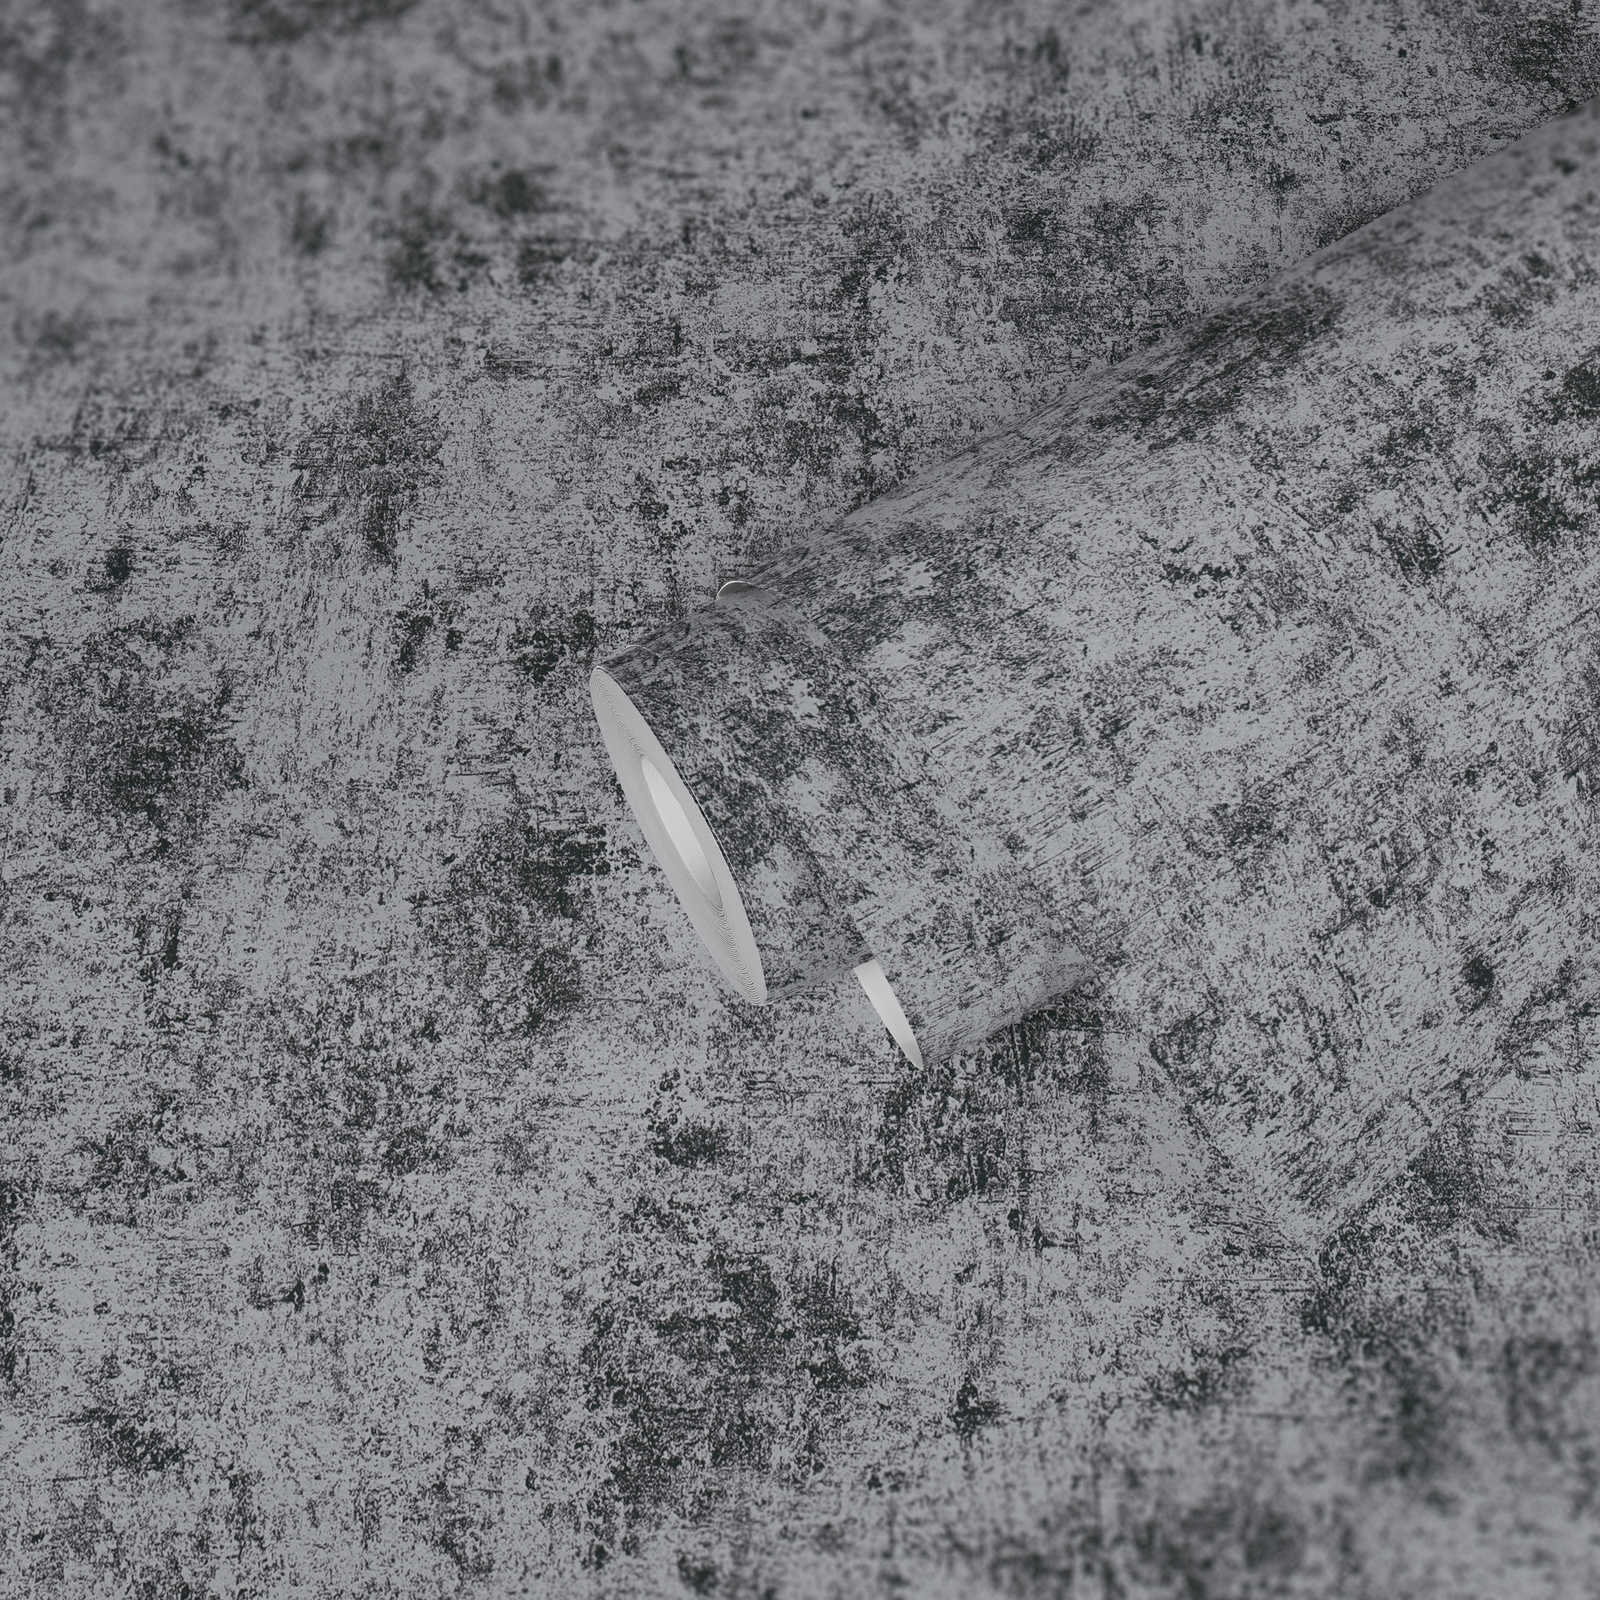             Carta da parati effetto metallo liscia e lucida - argento, nero, metallizzato
        